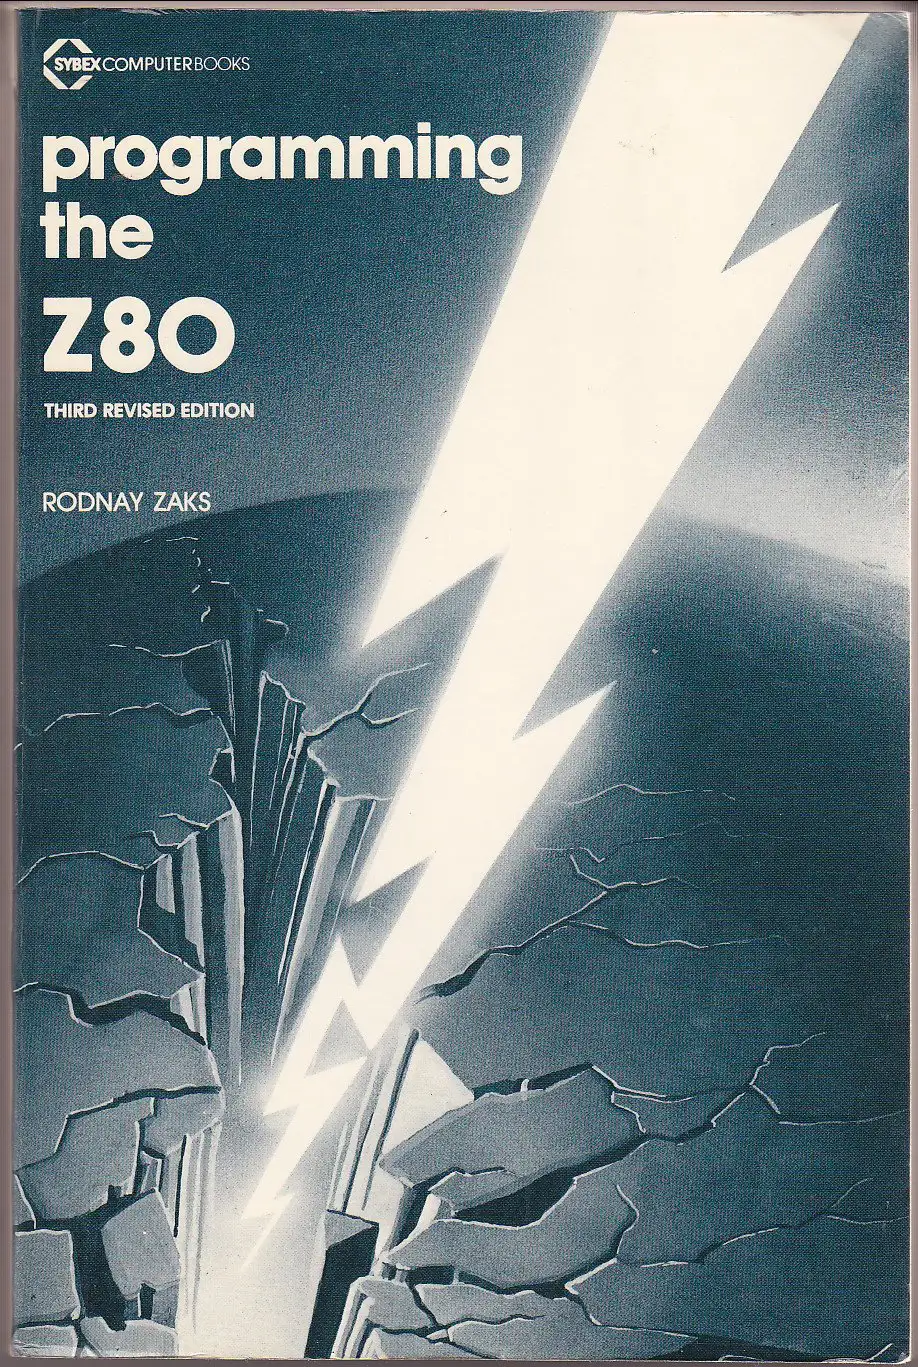 Programming the Z80 by Rodney Zaks